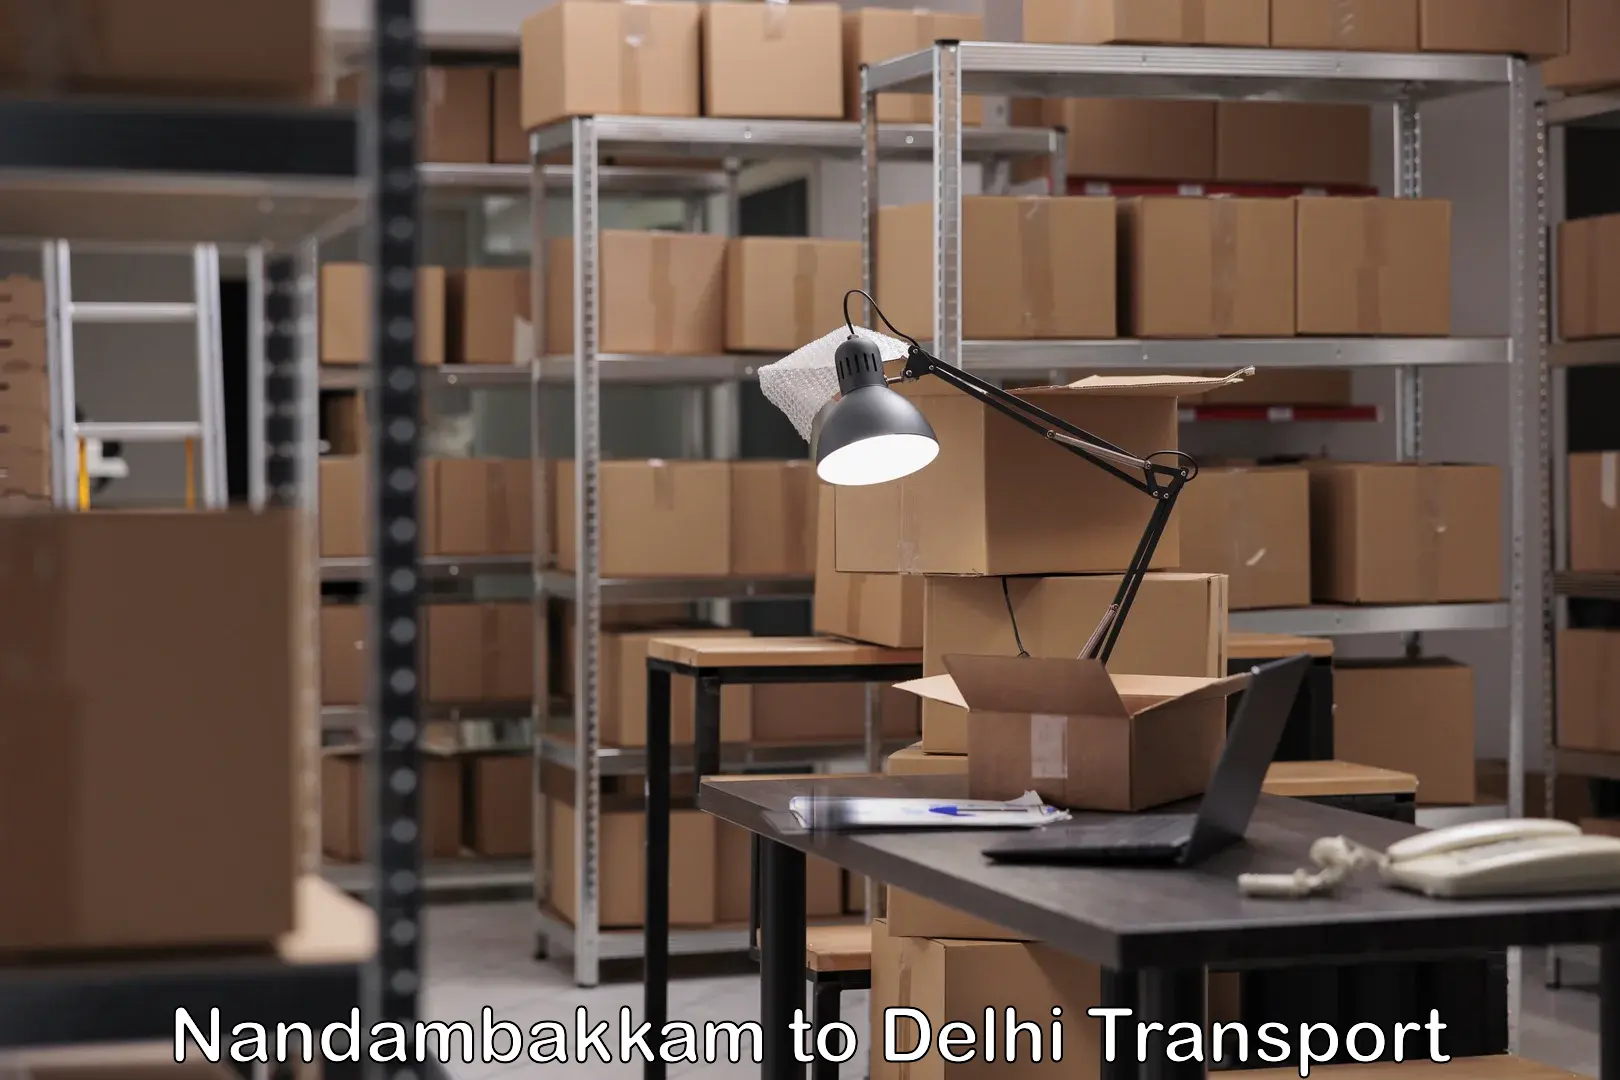 India truck logistics services Nandambakkam to NIT Delhi